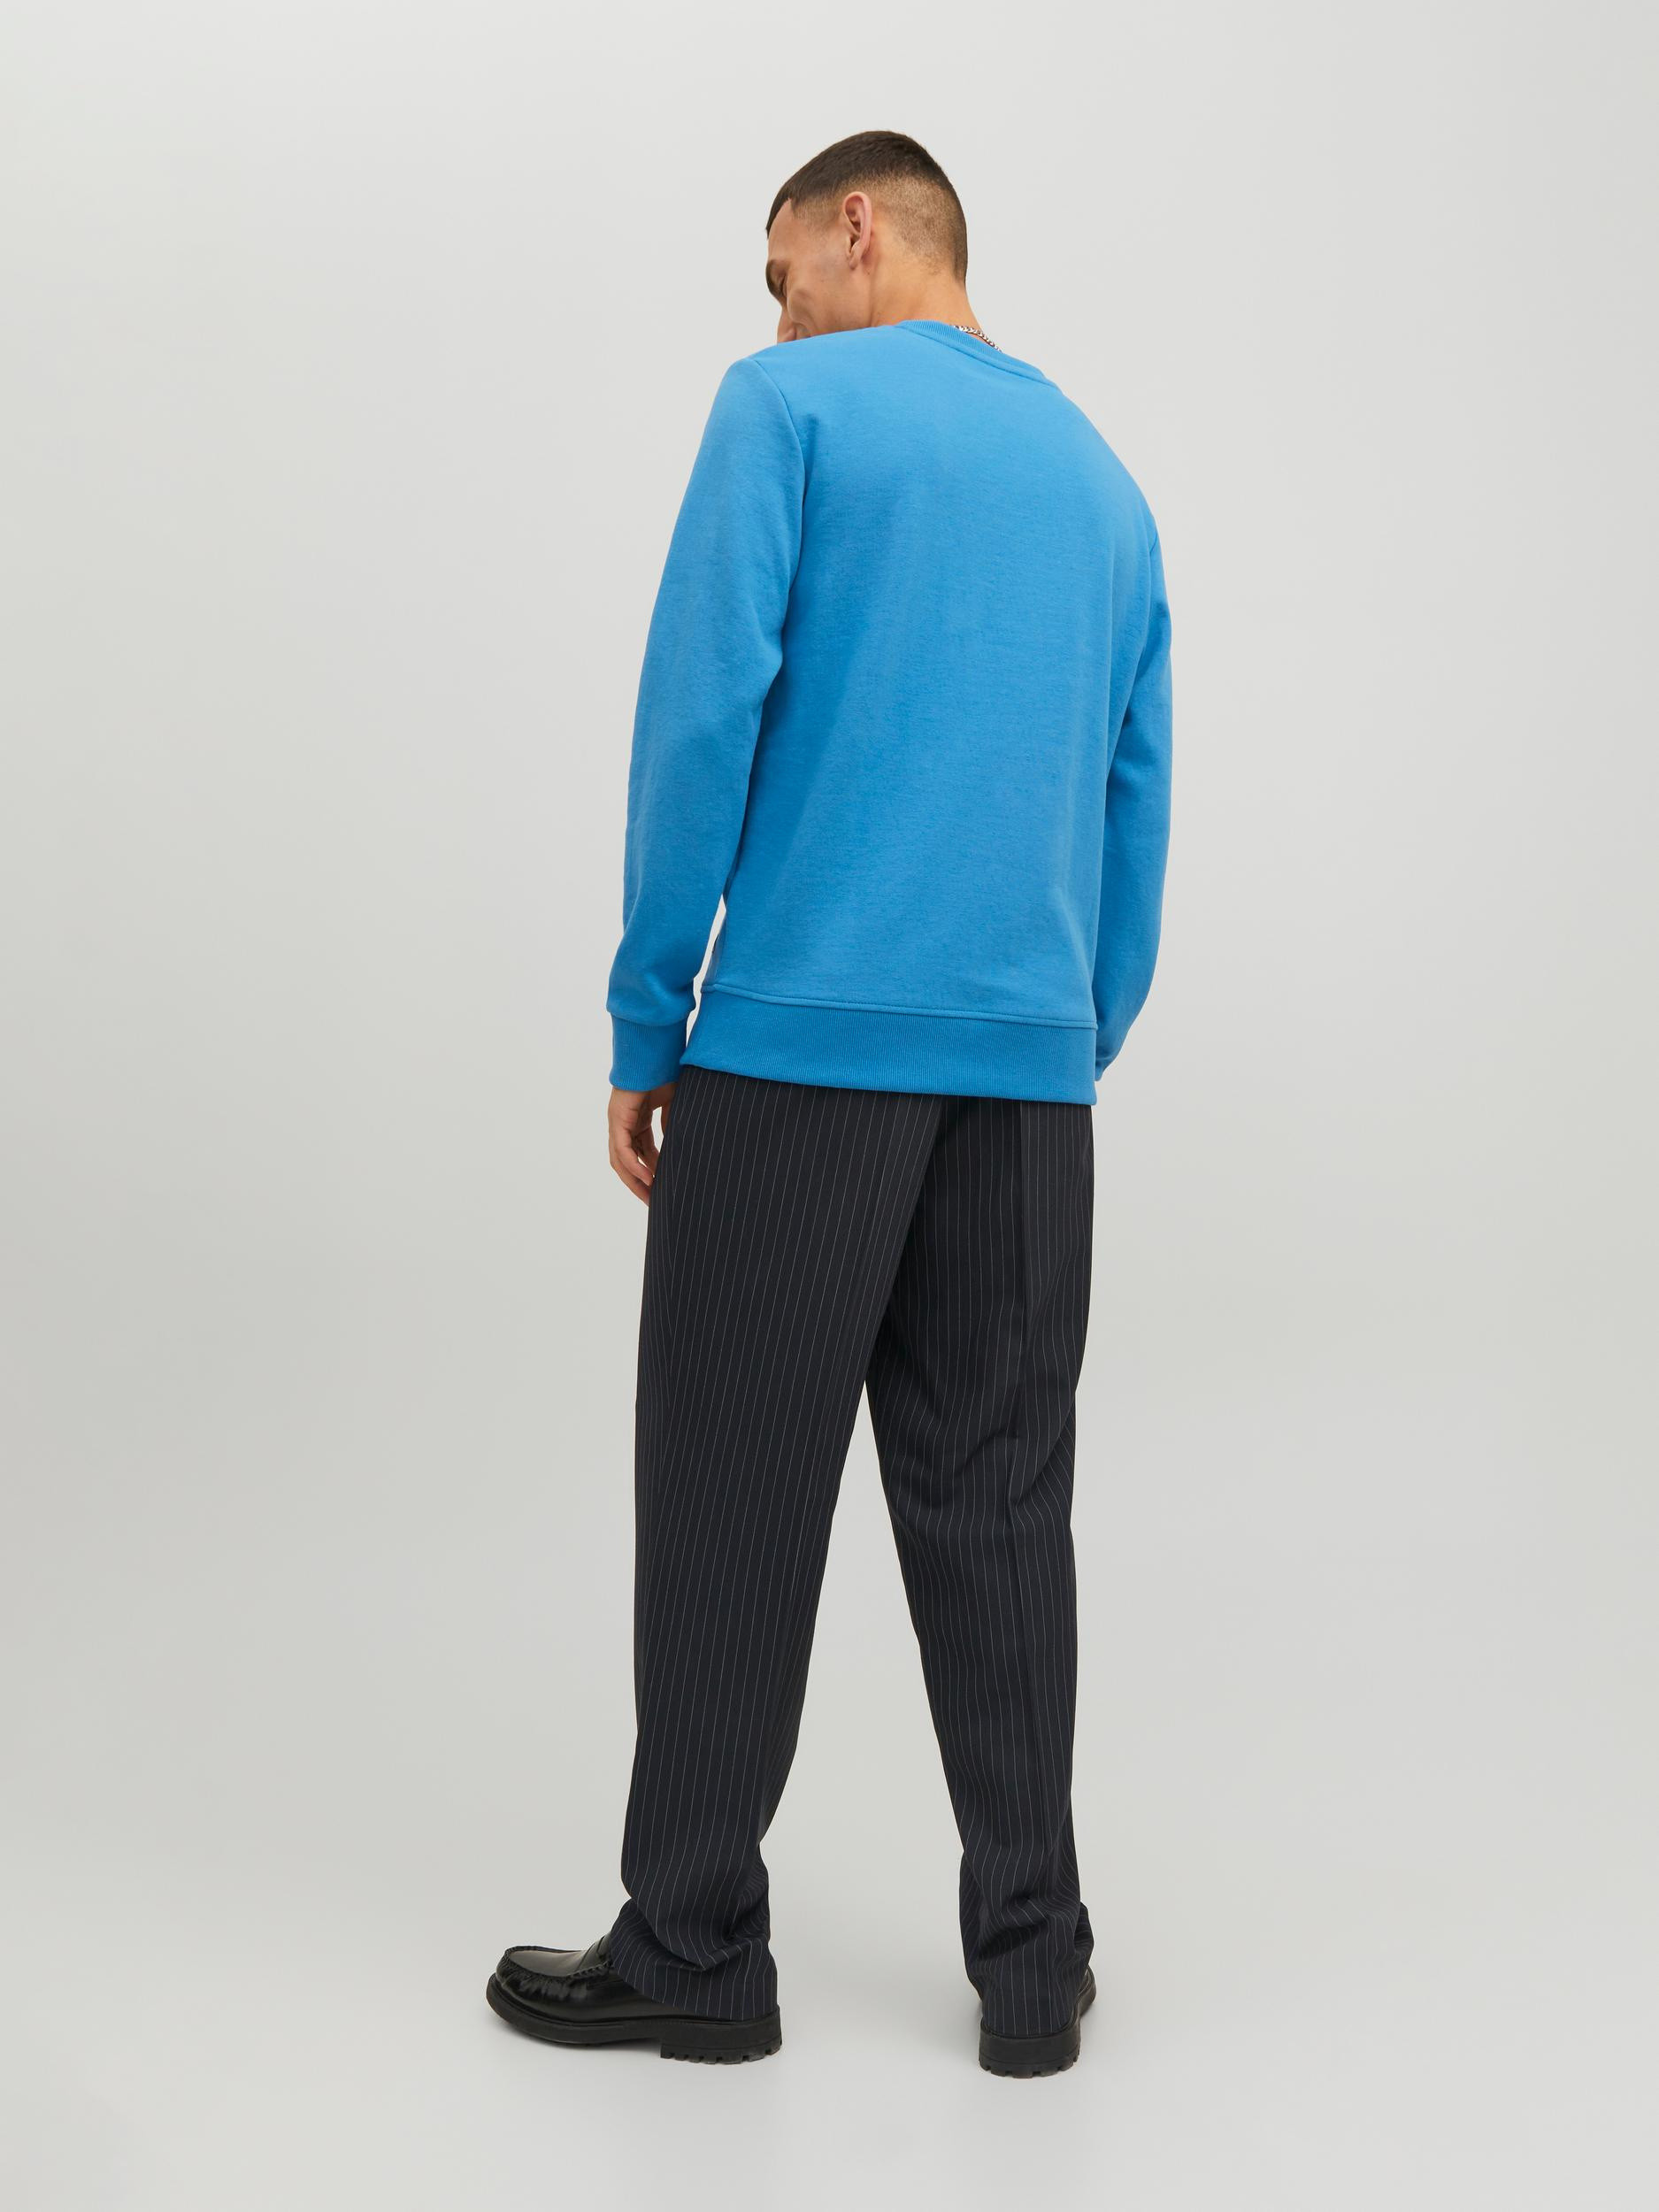 Jack & Jones - Pullover regular fit, Azzurro, large image number 2